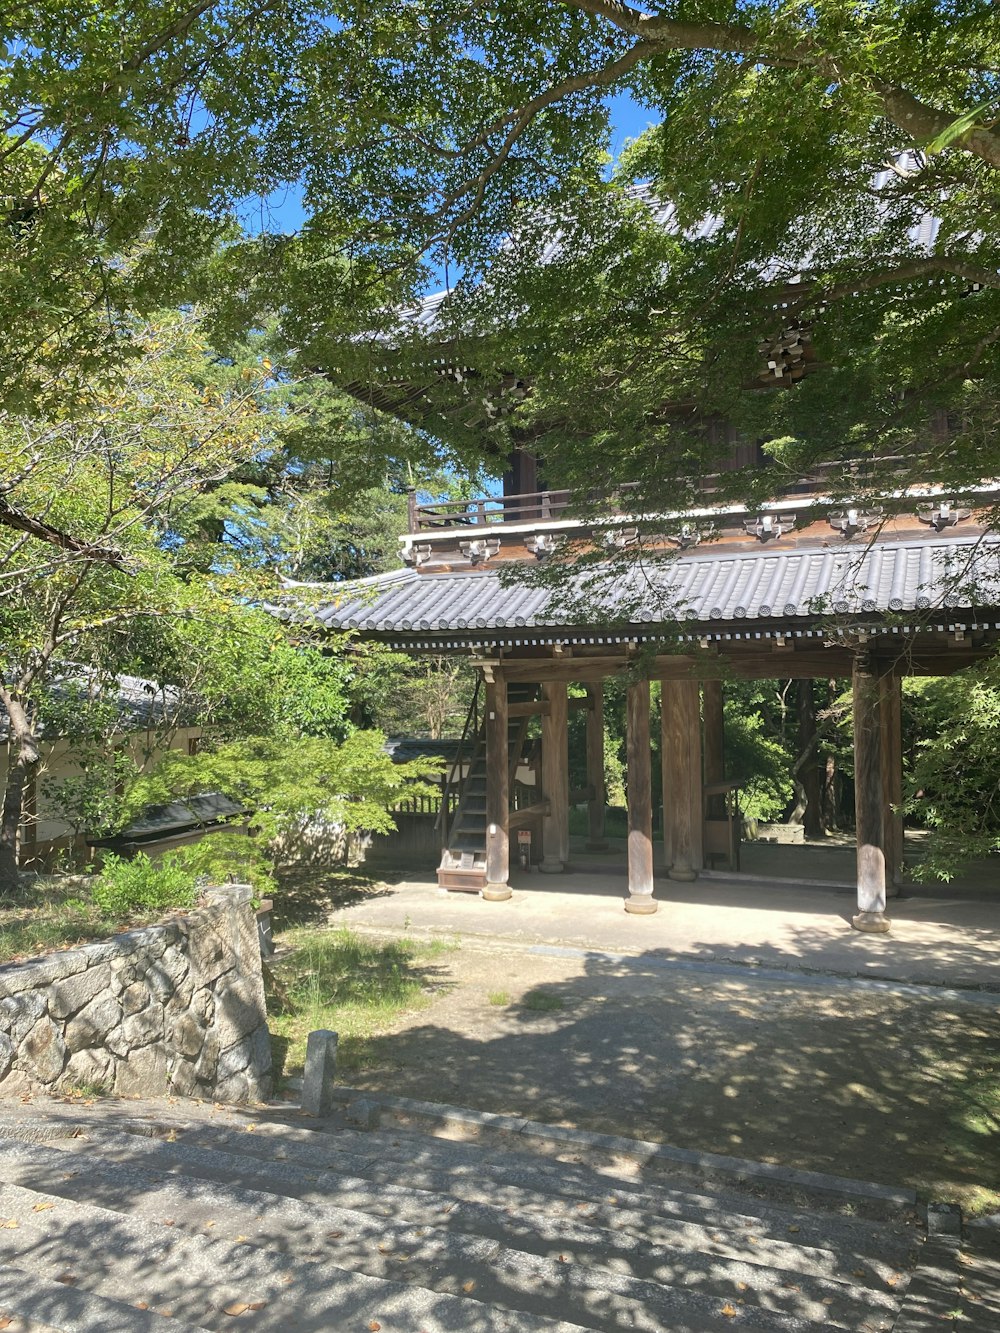 Una pasarela de piedra que conduce a un pabellón rodeado de árboles